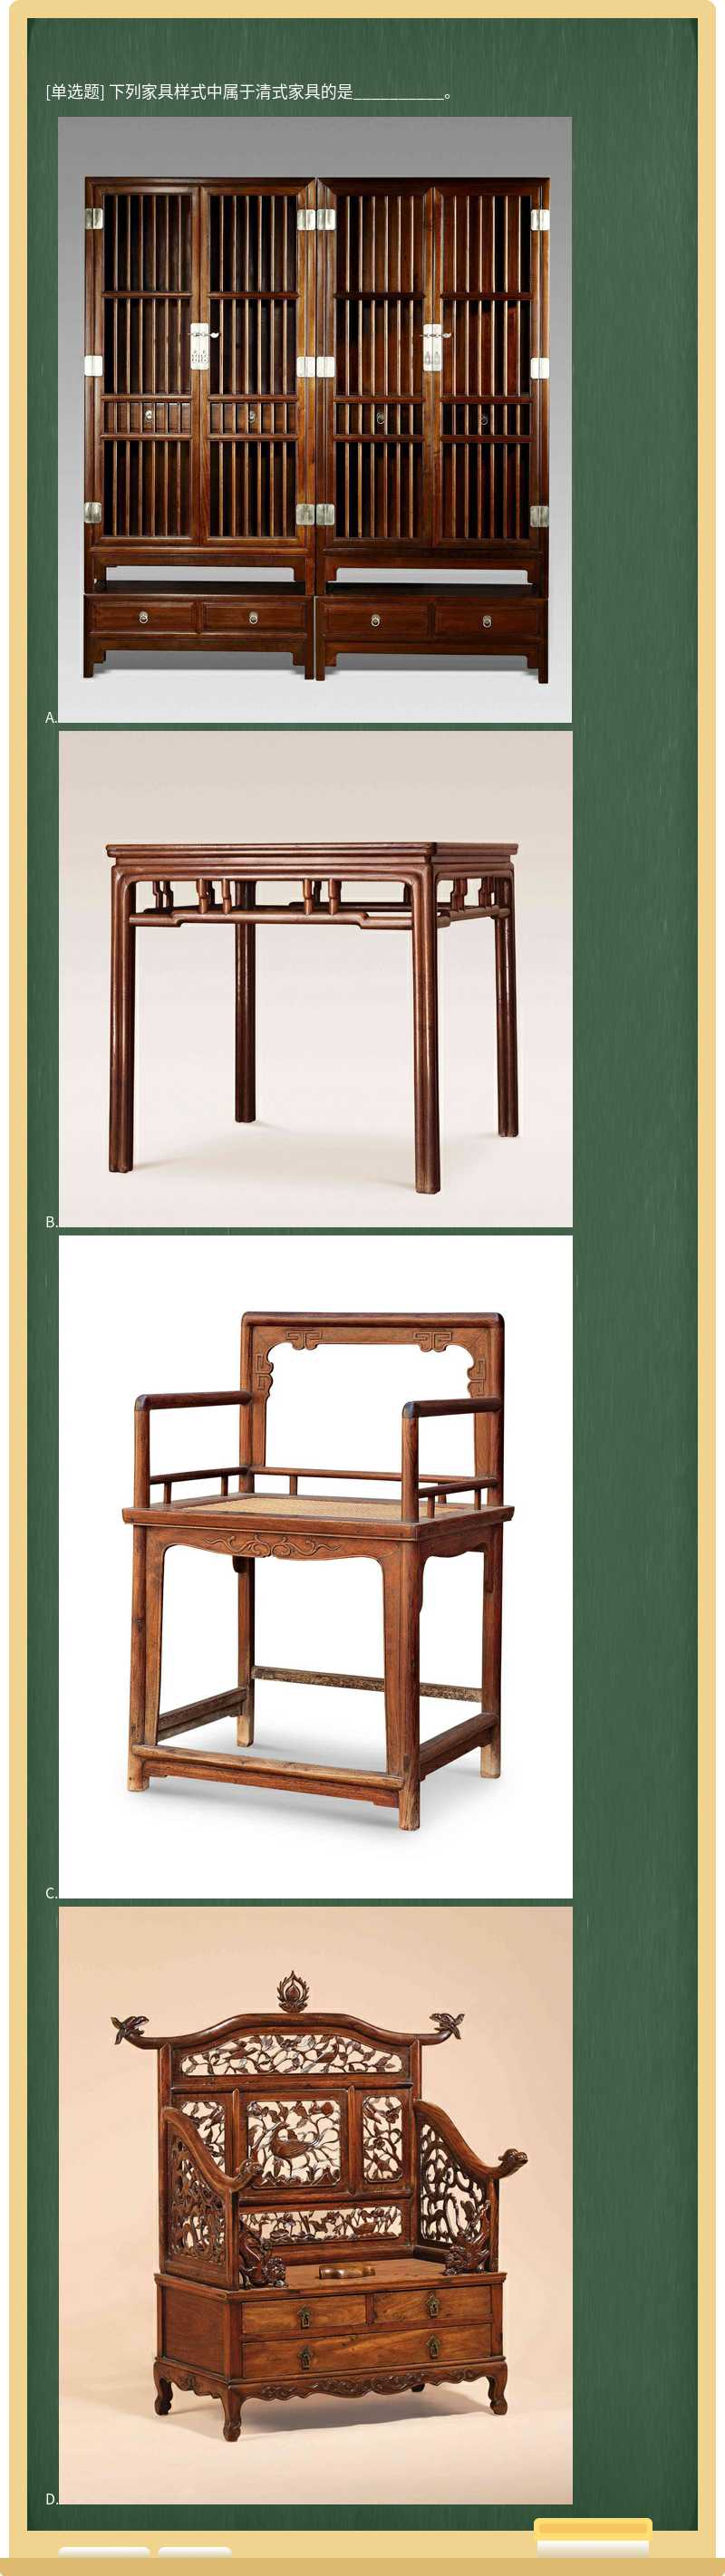 下列家具样式中属于清式家具的是__________。